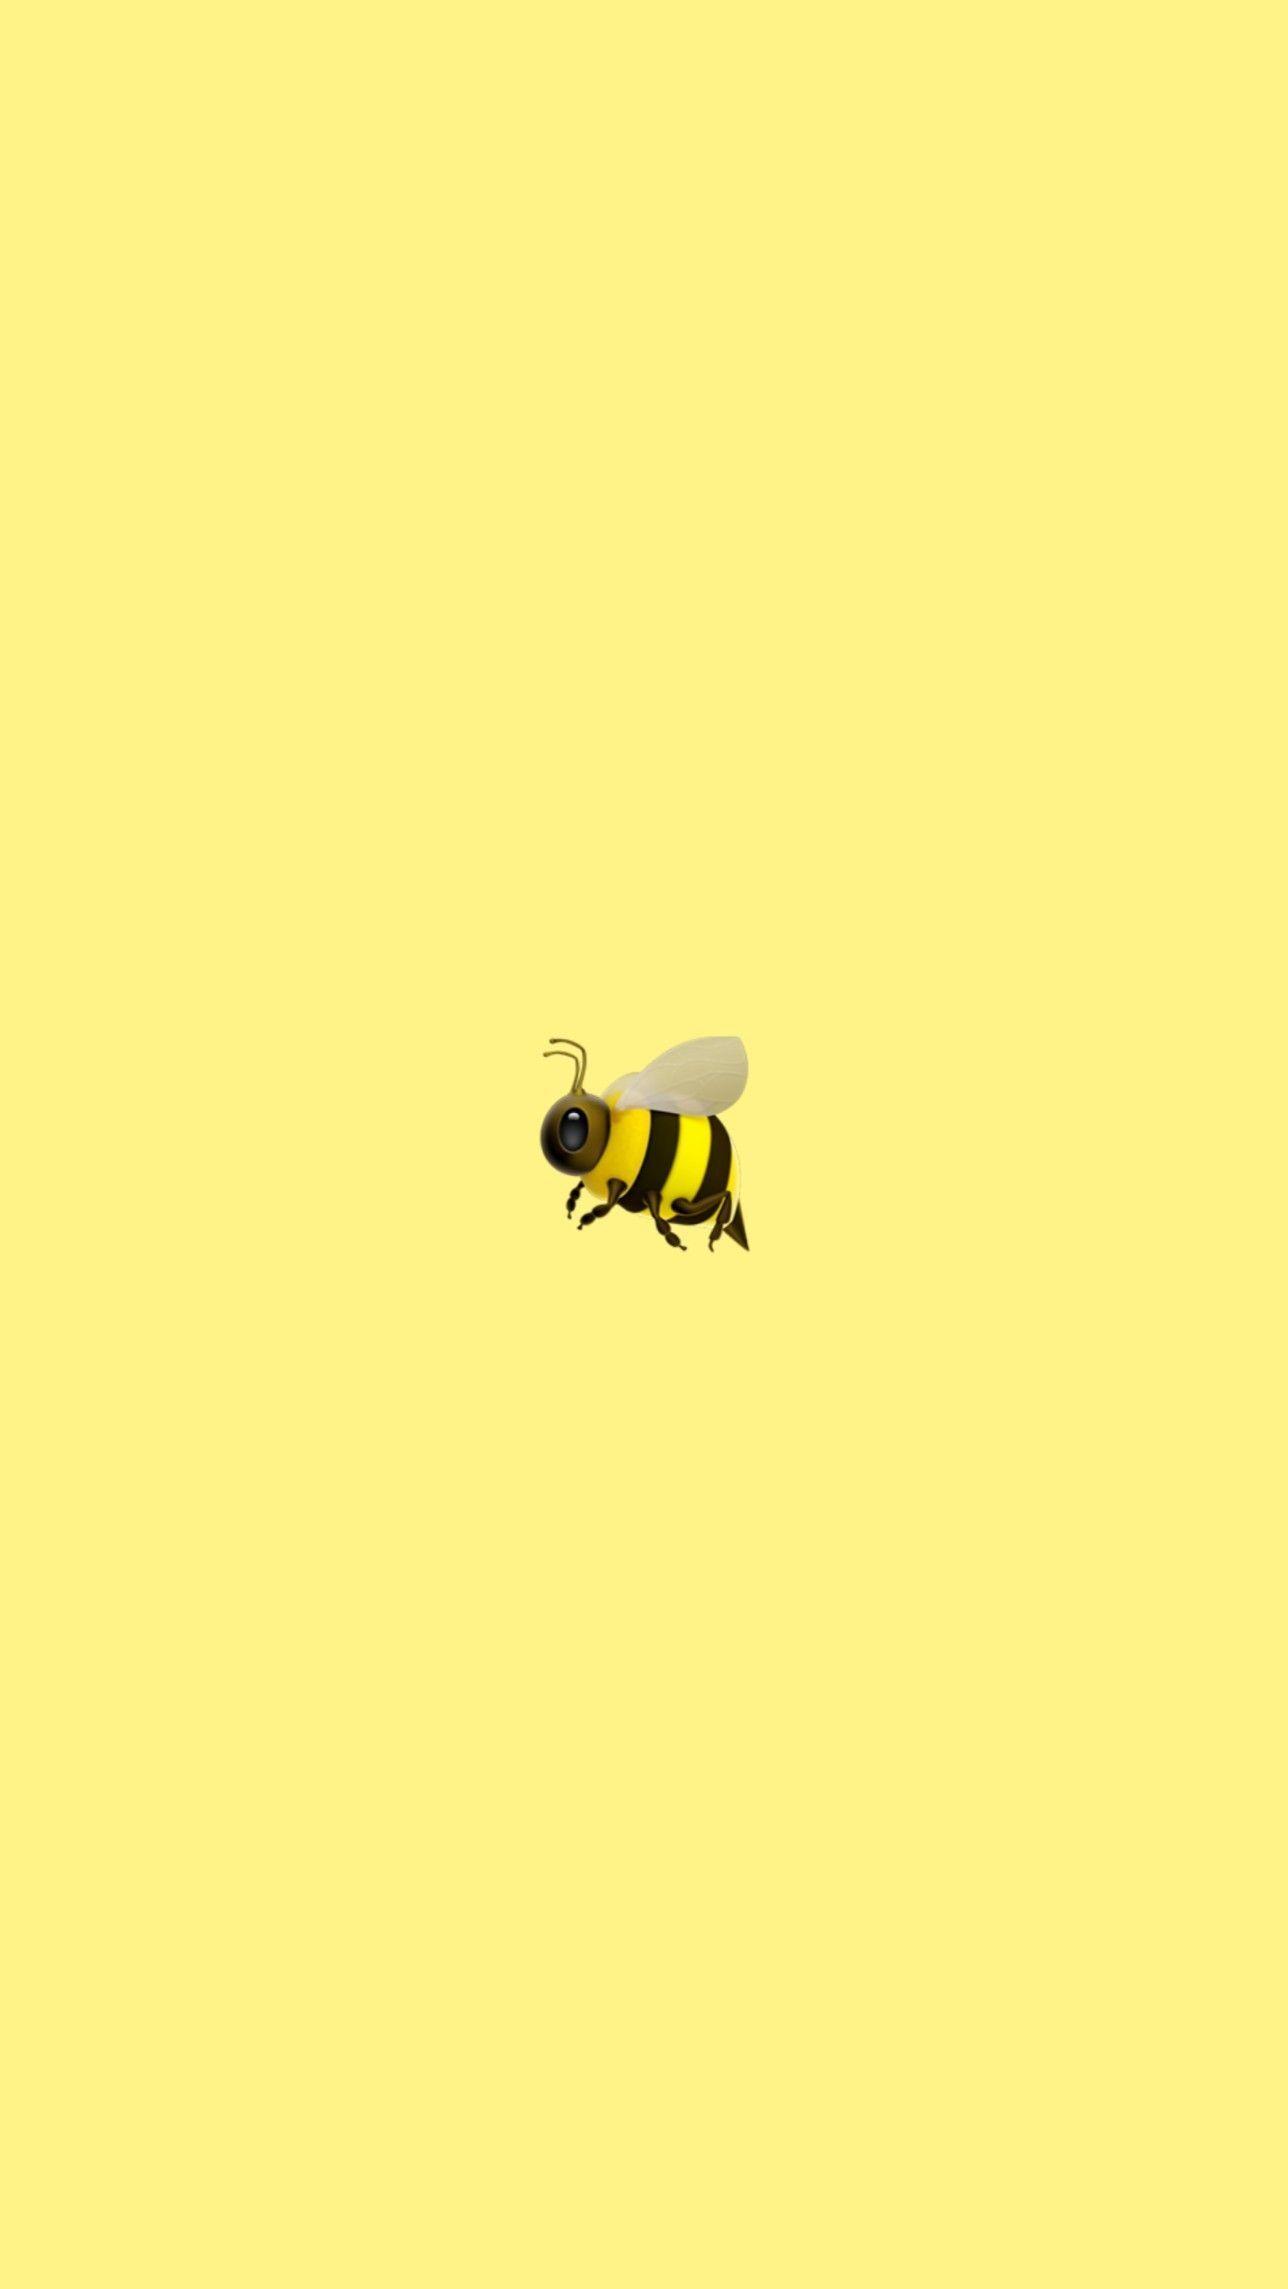 Cute Bee Wallpapers - Top Free Cute Bee